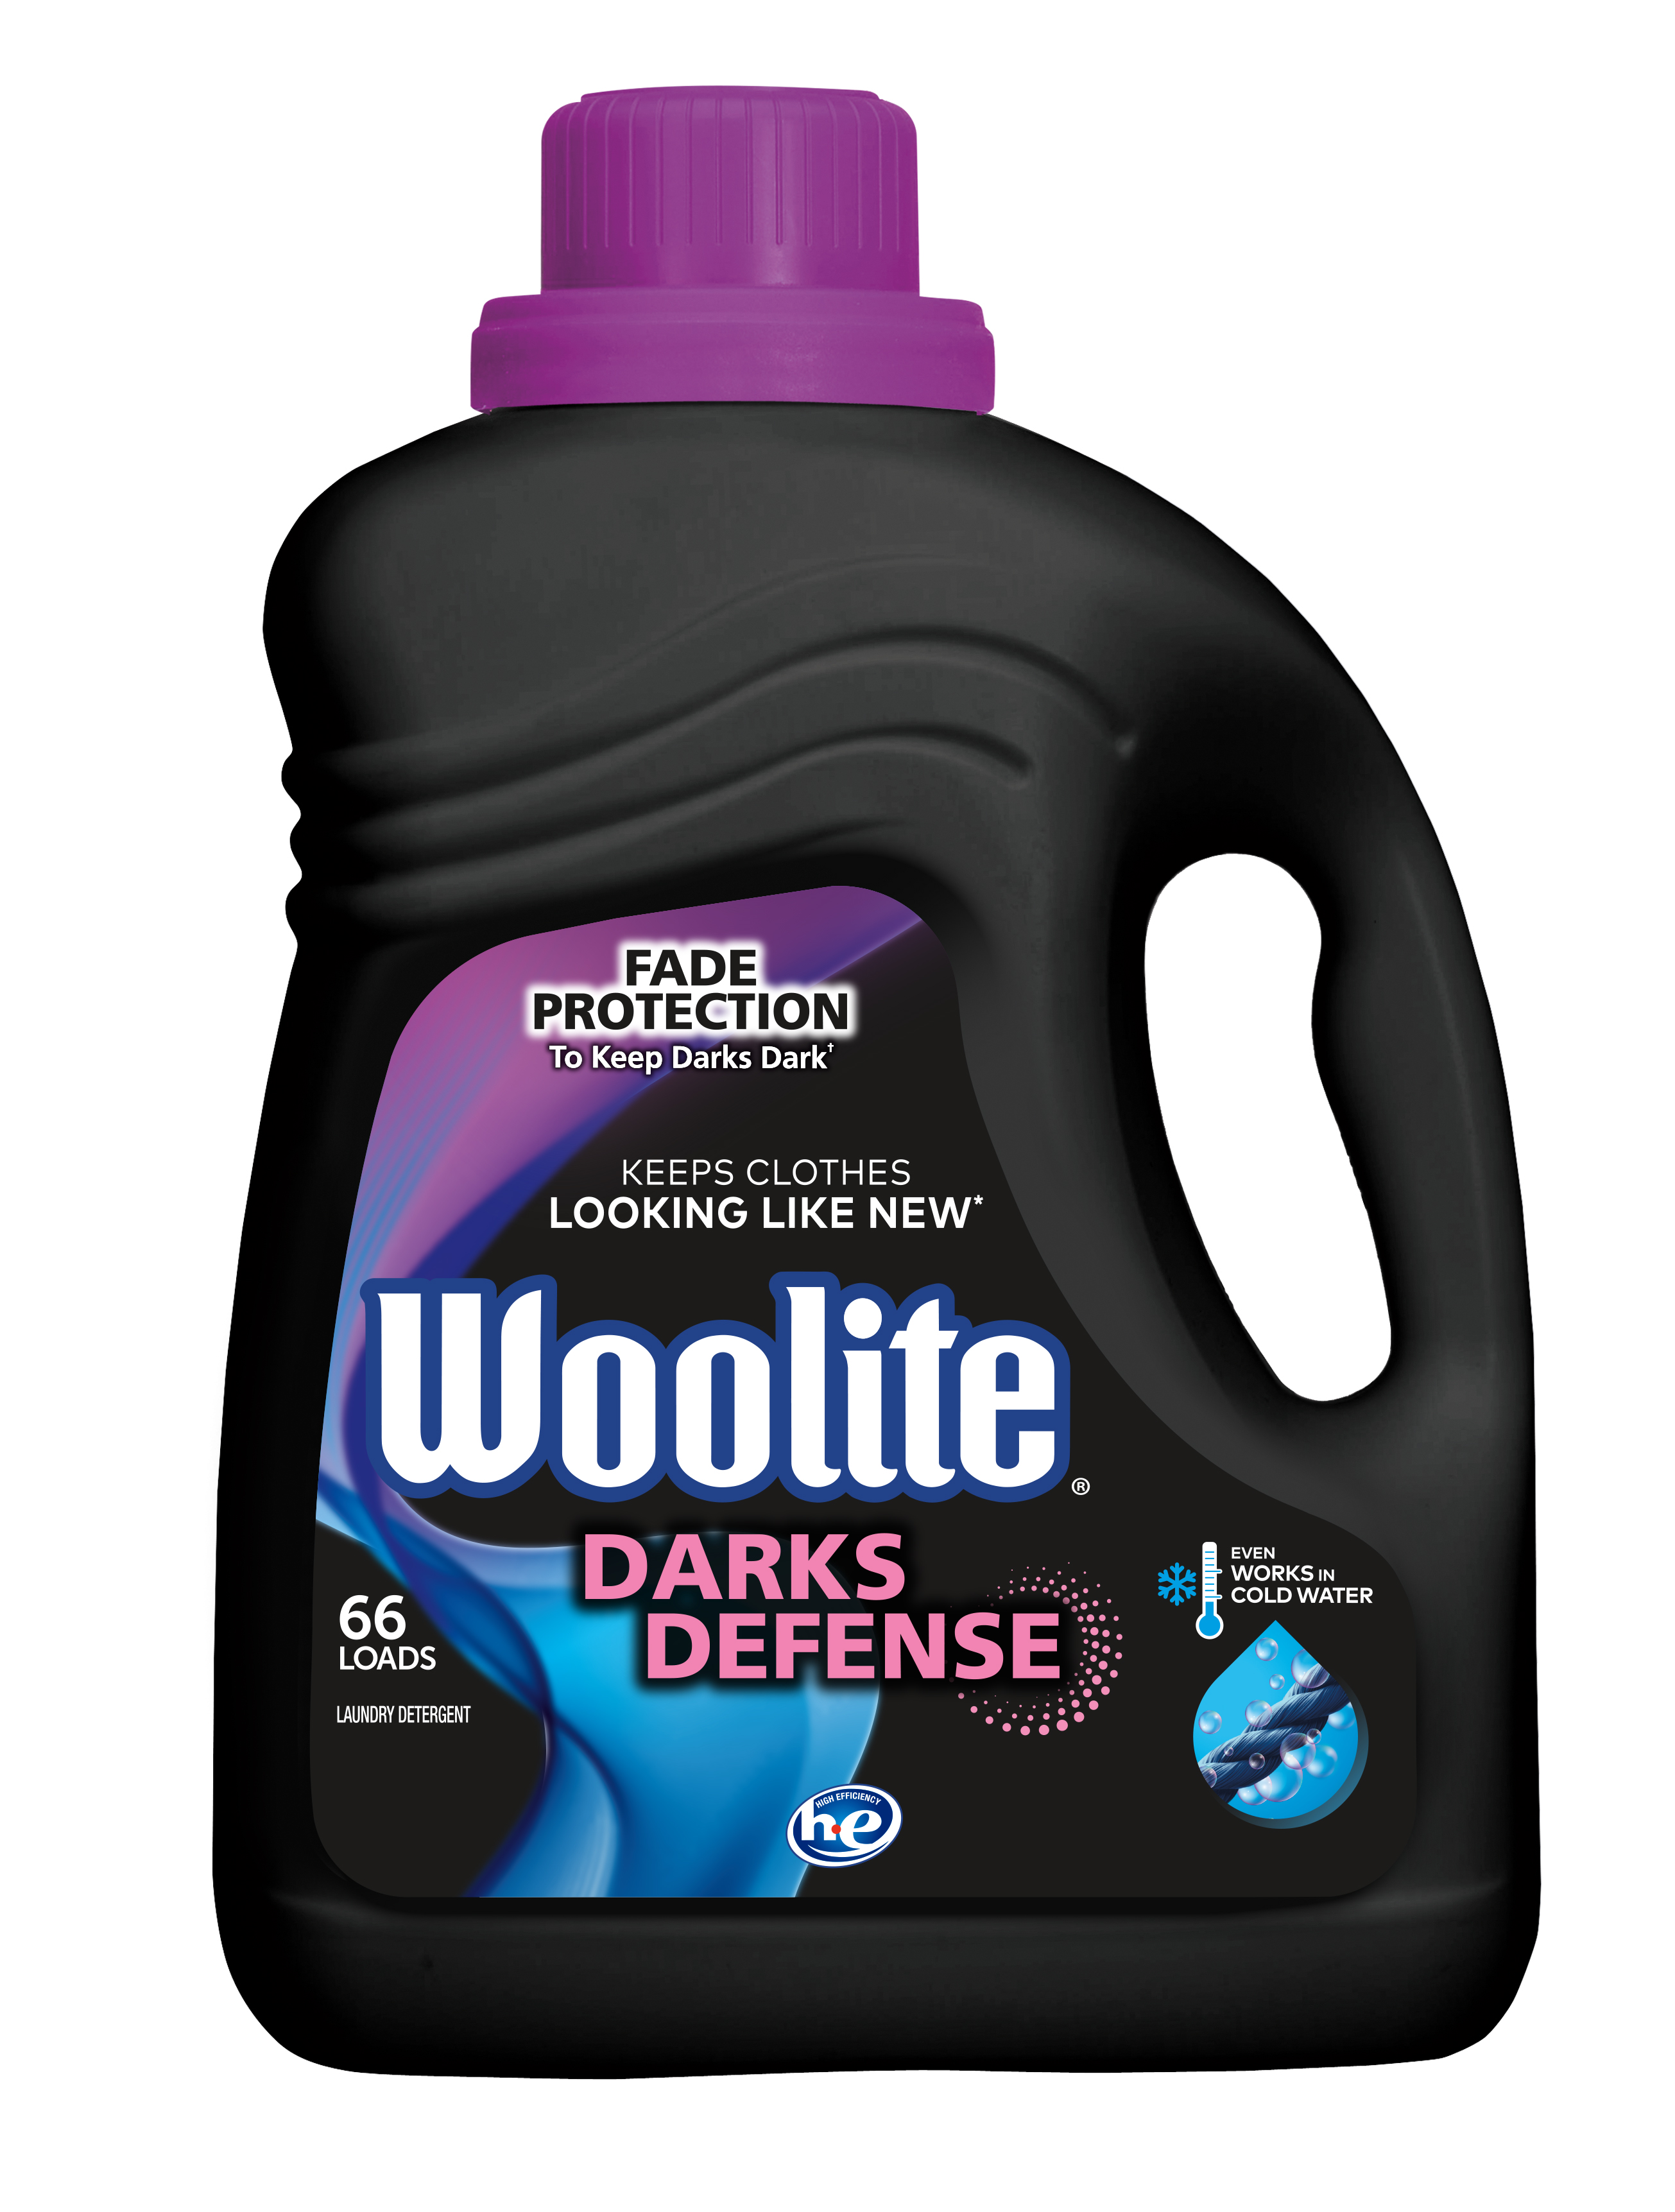 WOOLITE Darks Defense Laundry Detergent